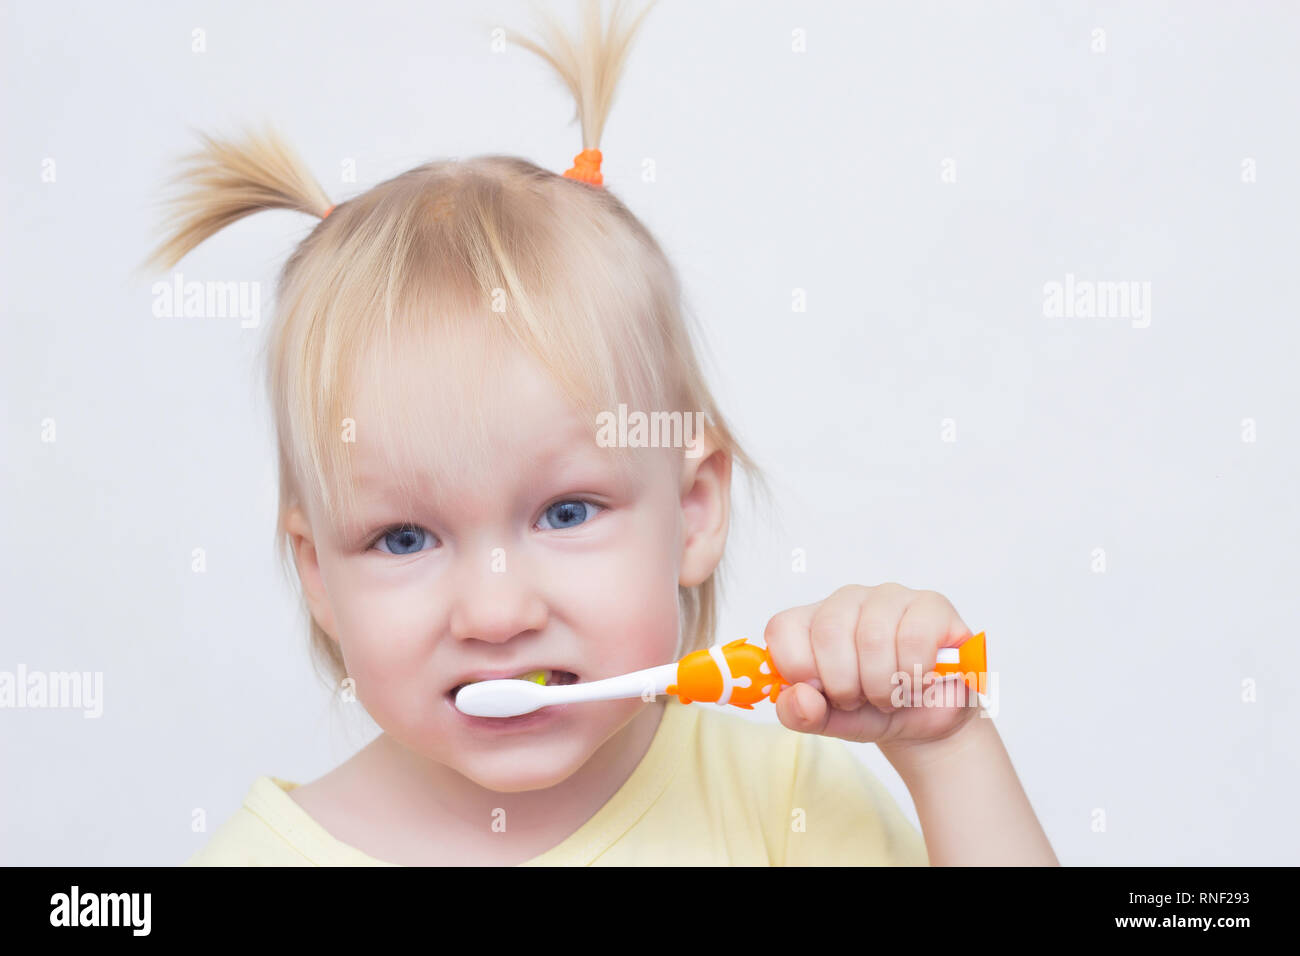 Portrait d'une petite fille blonde aux yeux bleus avec des nattes sur la tête qui brosse les dents avec une brosse à dents, close-up, fond blanc, copie de l'espace, Banque D'Images